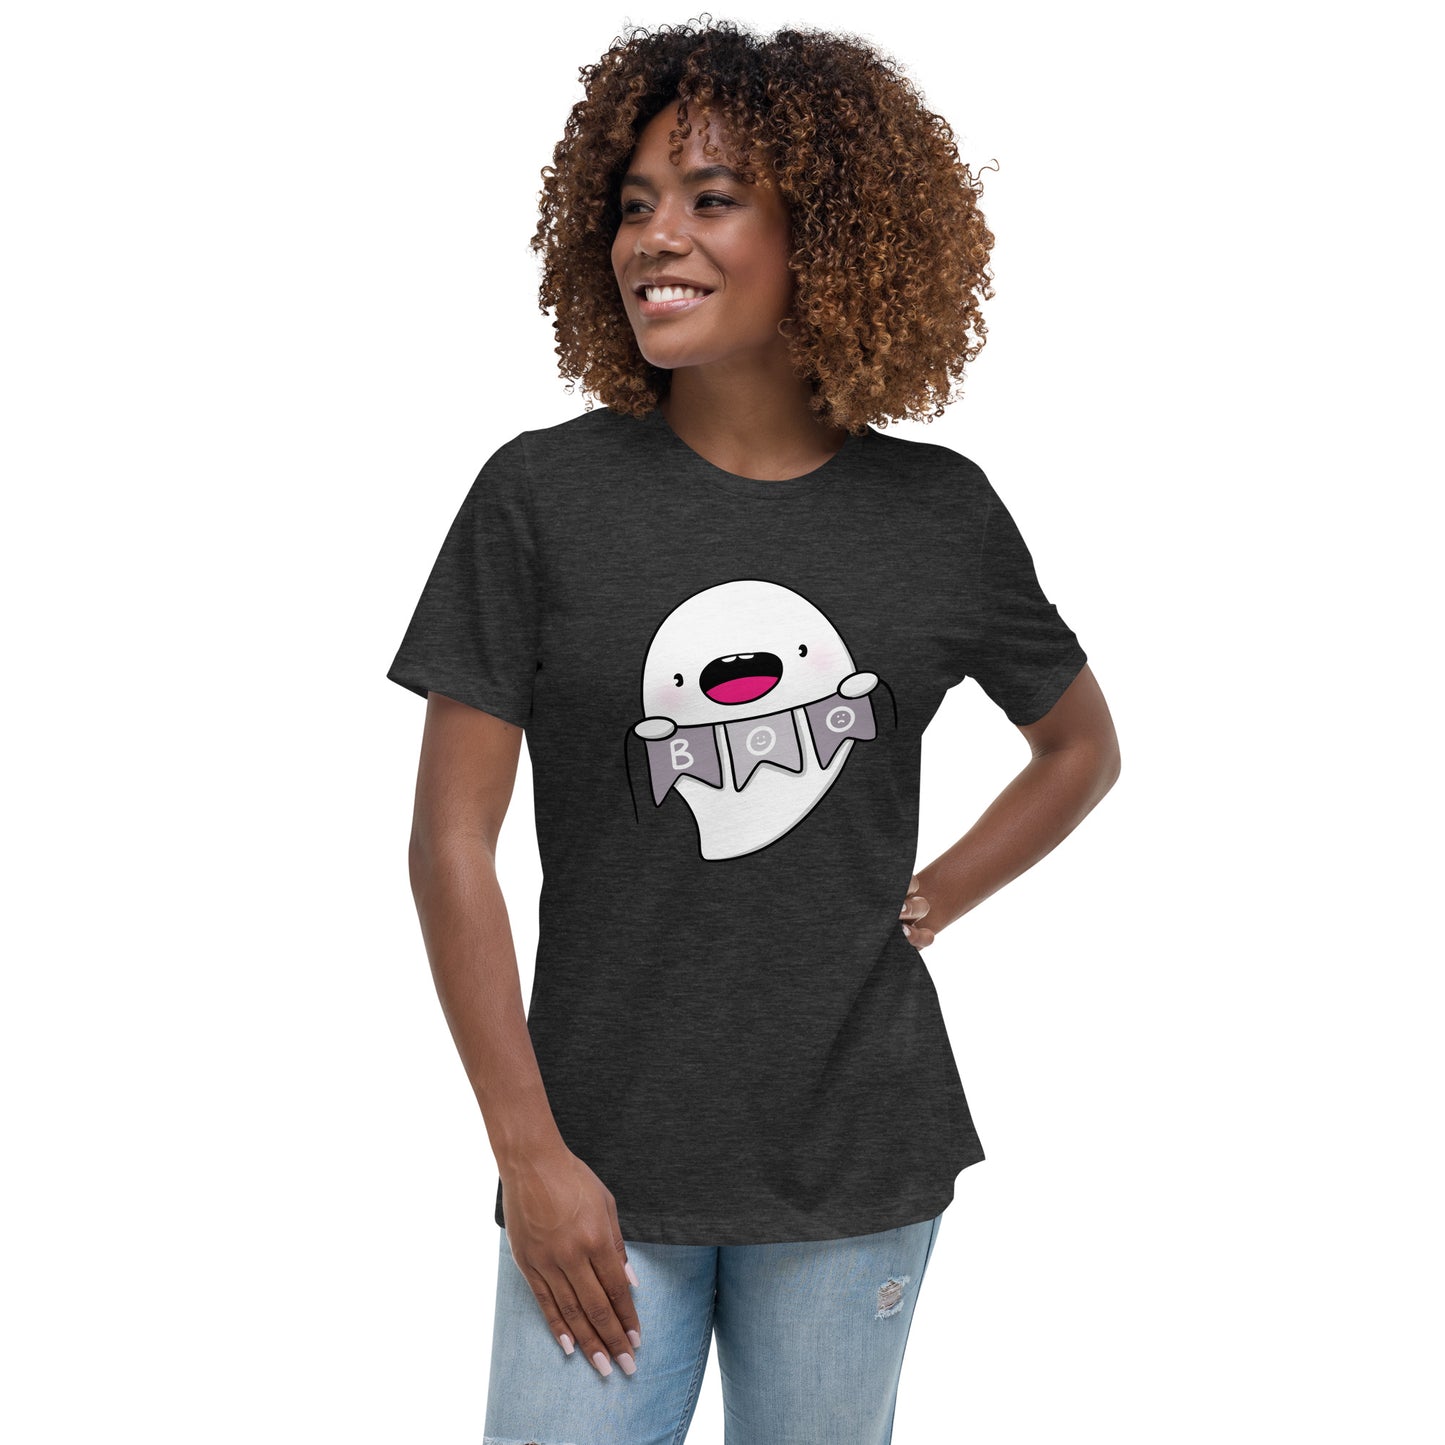 Boo - Women's Relaxed T-Shirt